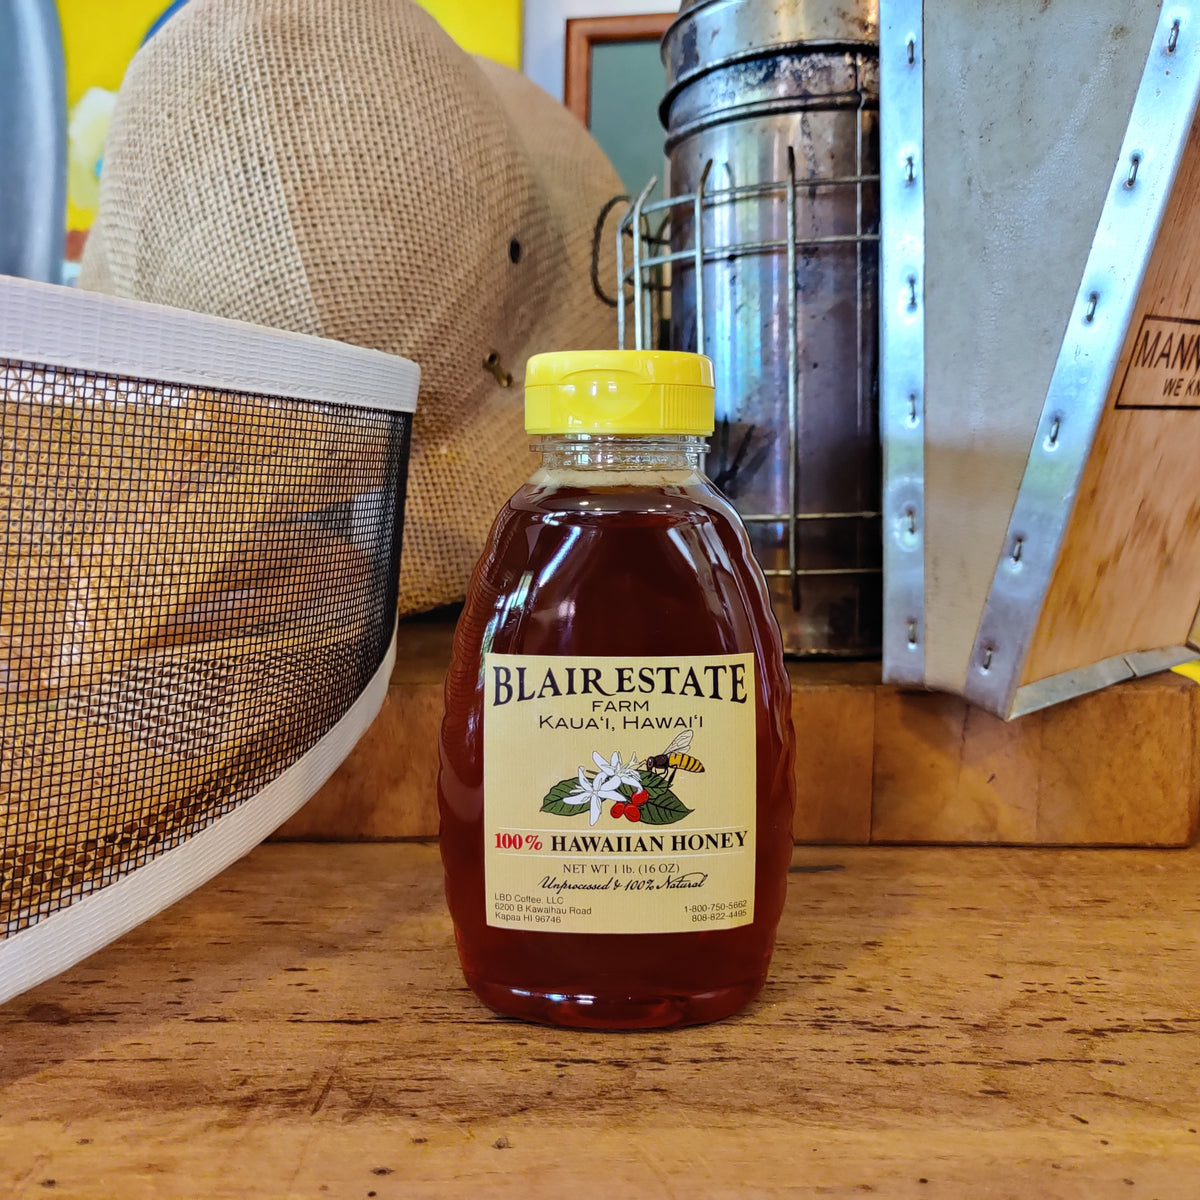 Blair Estate Kauai Honey